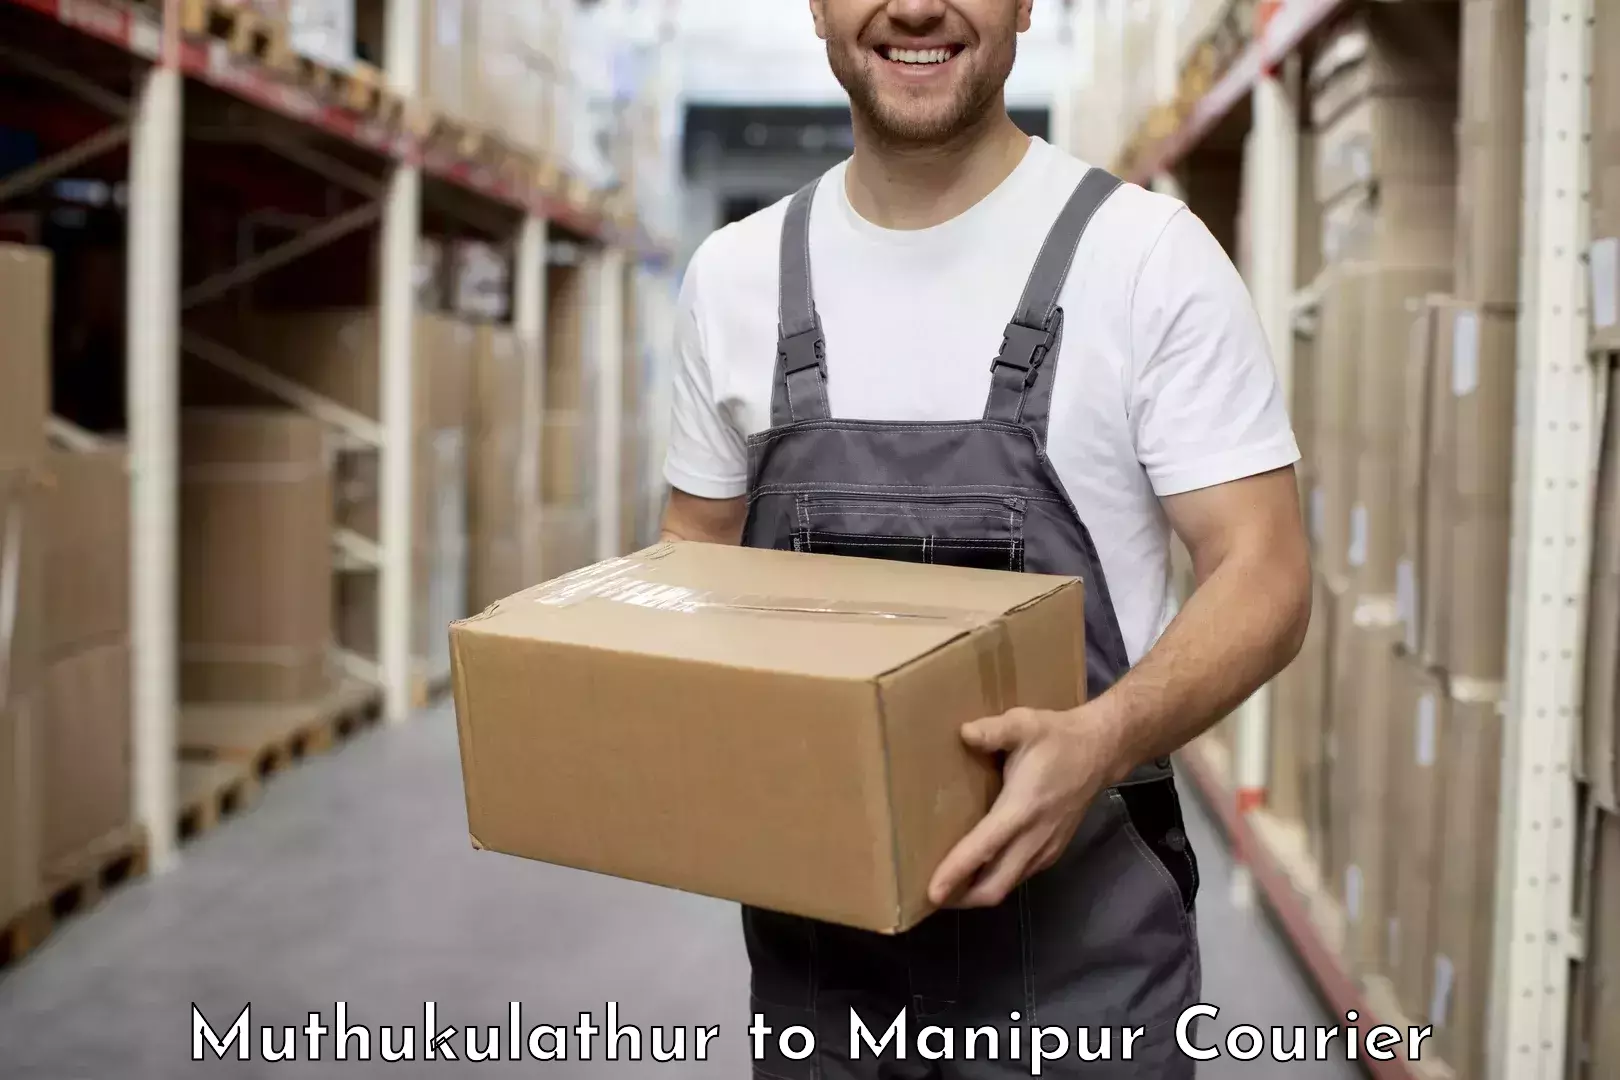 High-capacity parcel service Muthukulathur to Ukhrul